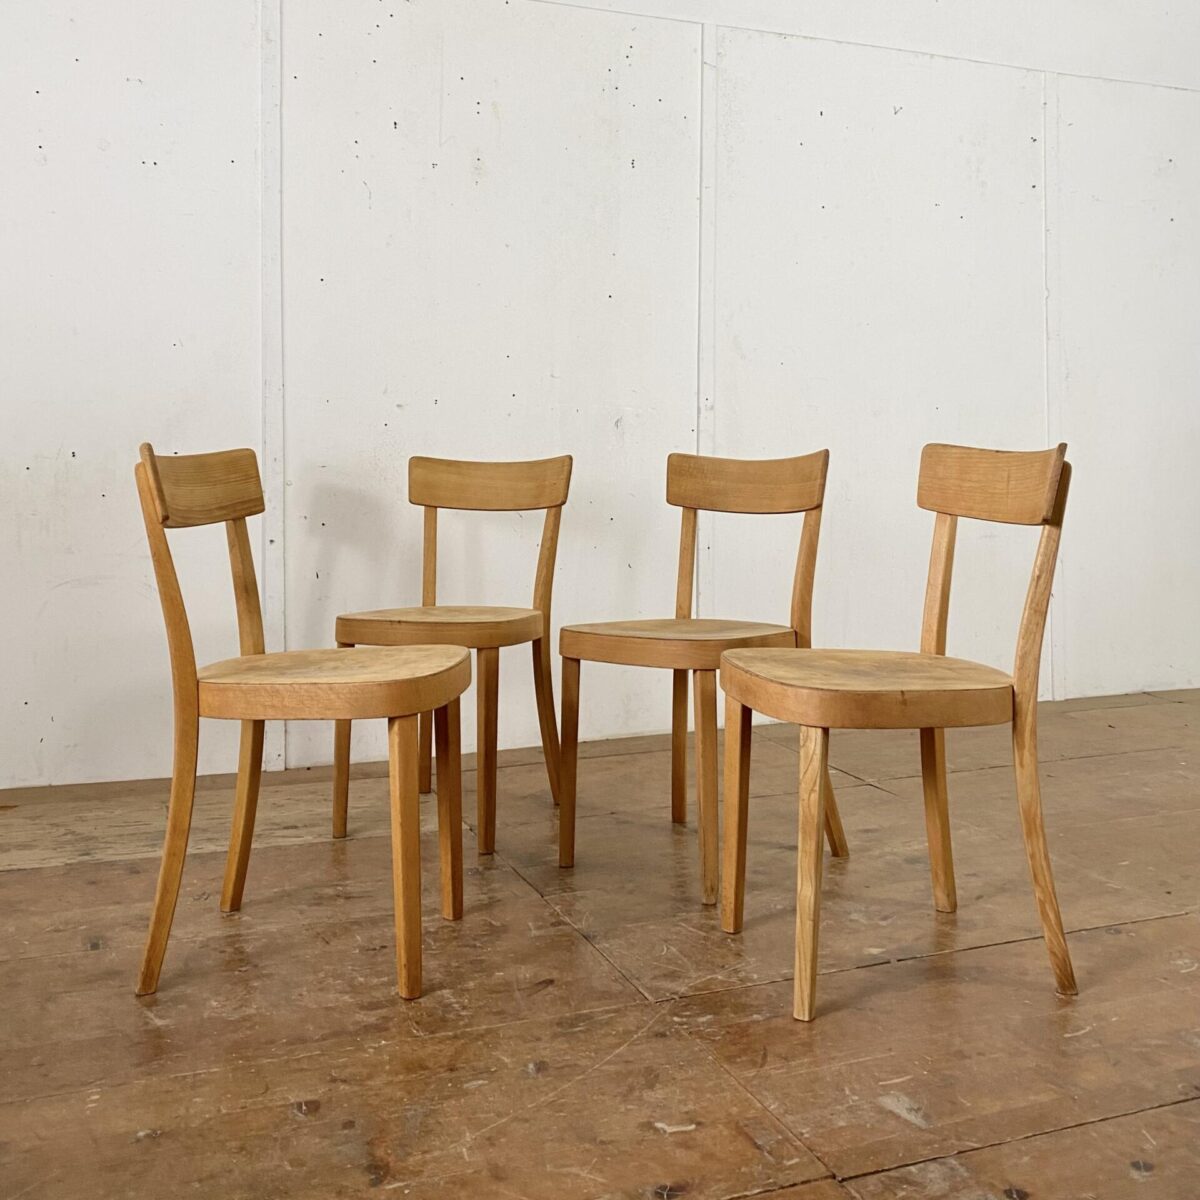 Deuxieme.shop 4er Set Horgenglarus Classic. Die Stühle sind in stabilem restaurierten Zustand, die Holz Oberflächen sind geschliffen geölt. 